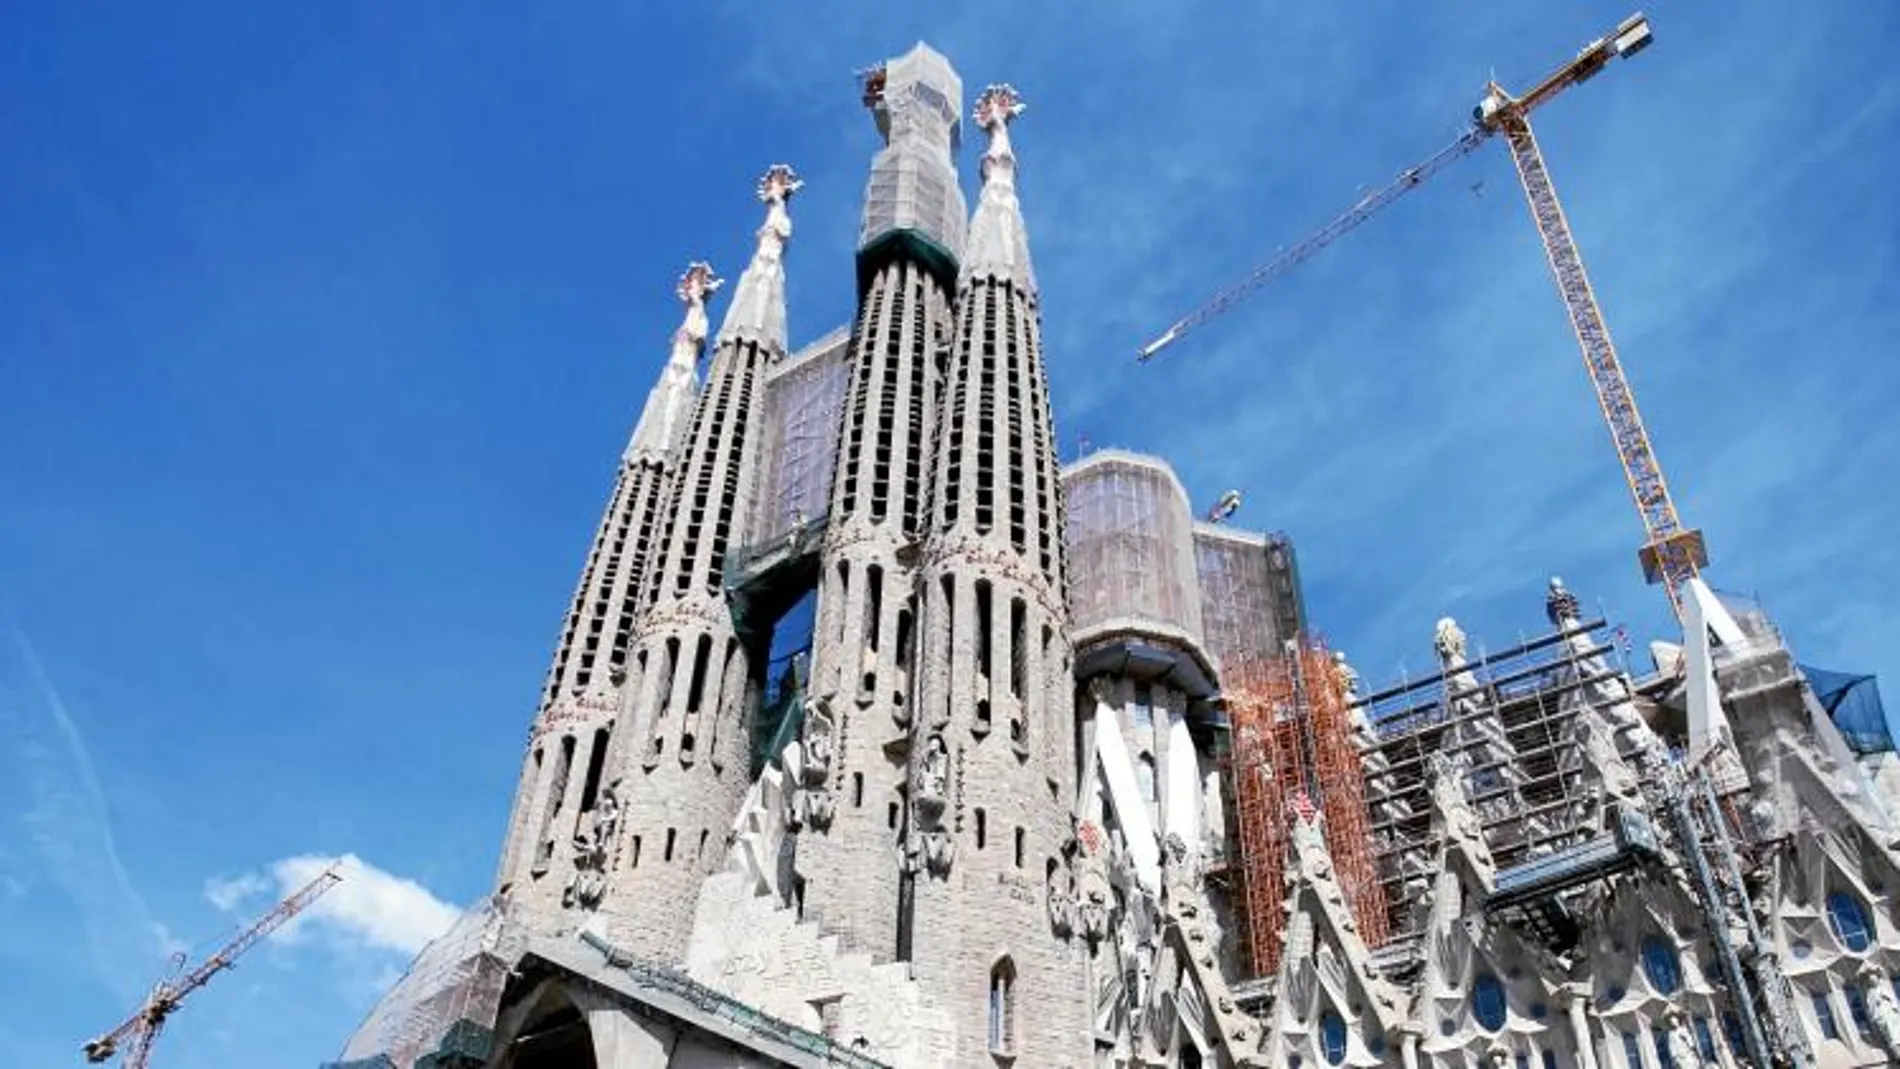 La basílica se espera pueda estar concluida en 2026, con motivo del centenario de la muerte de Gaudí